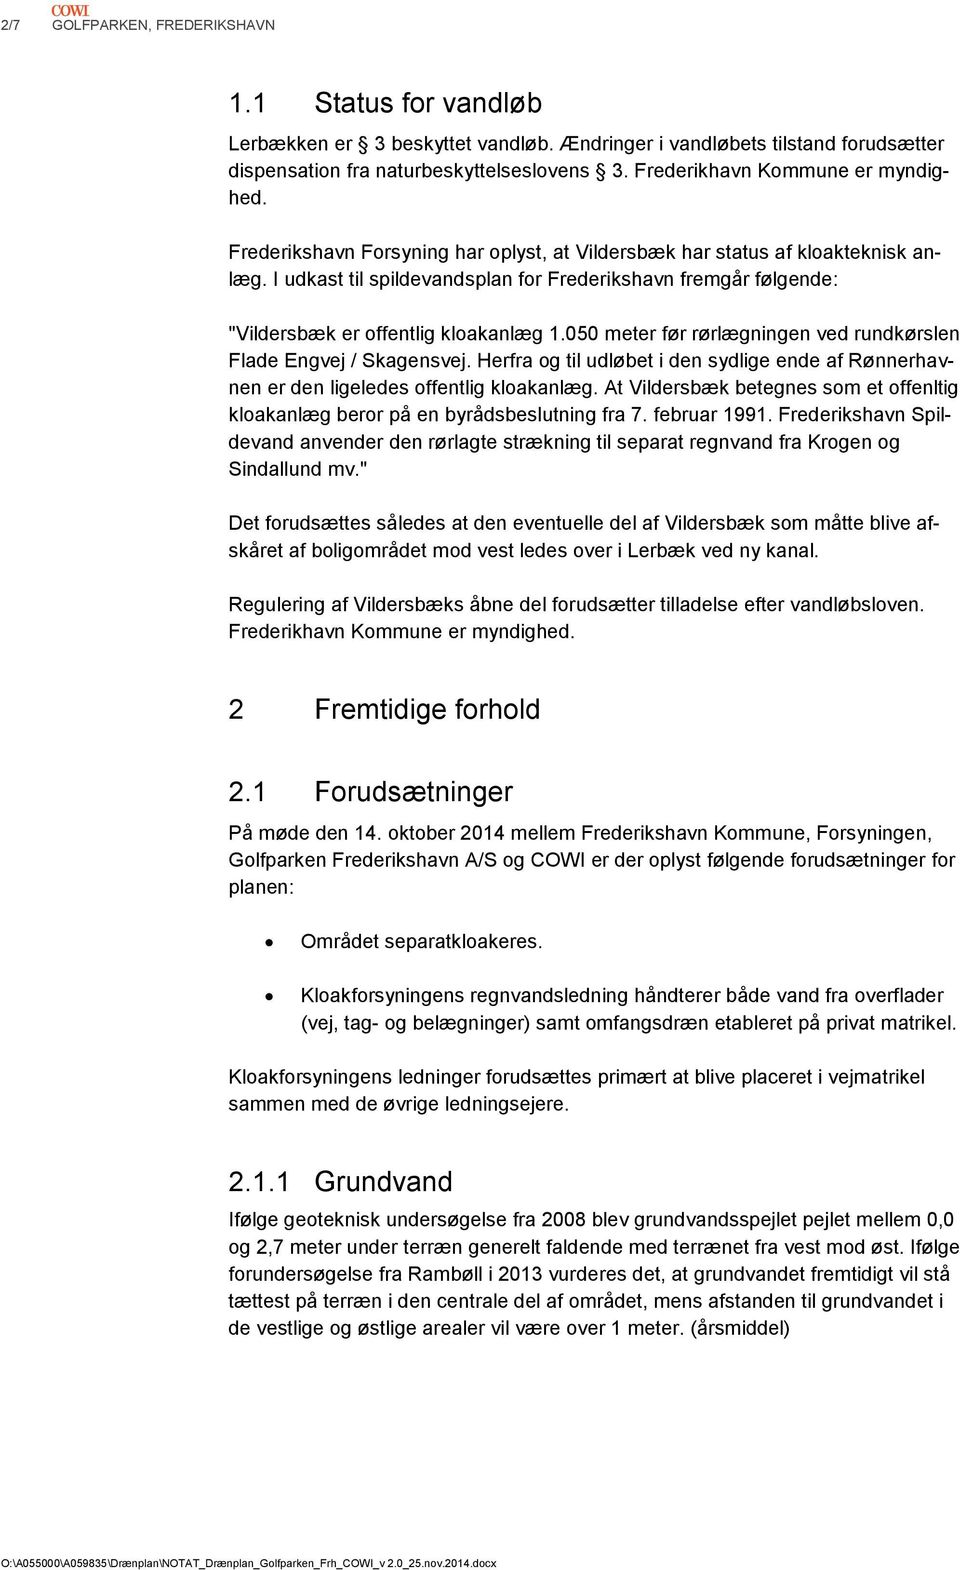 I udkast til spildevandsplan for Frederikshavn fremgår følgende: "Vildersbæk er offentlig kloakanlæg 1.050 meter før rørlægningen ved rundkørslen Flade Engvej / Skagensvej.